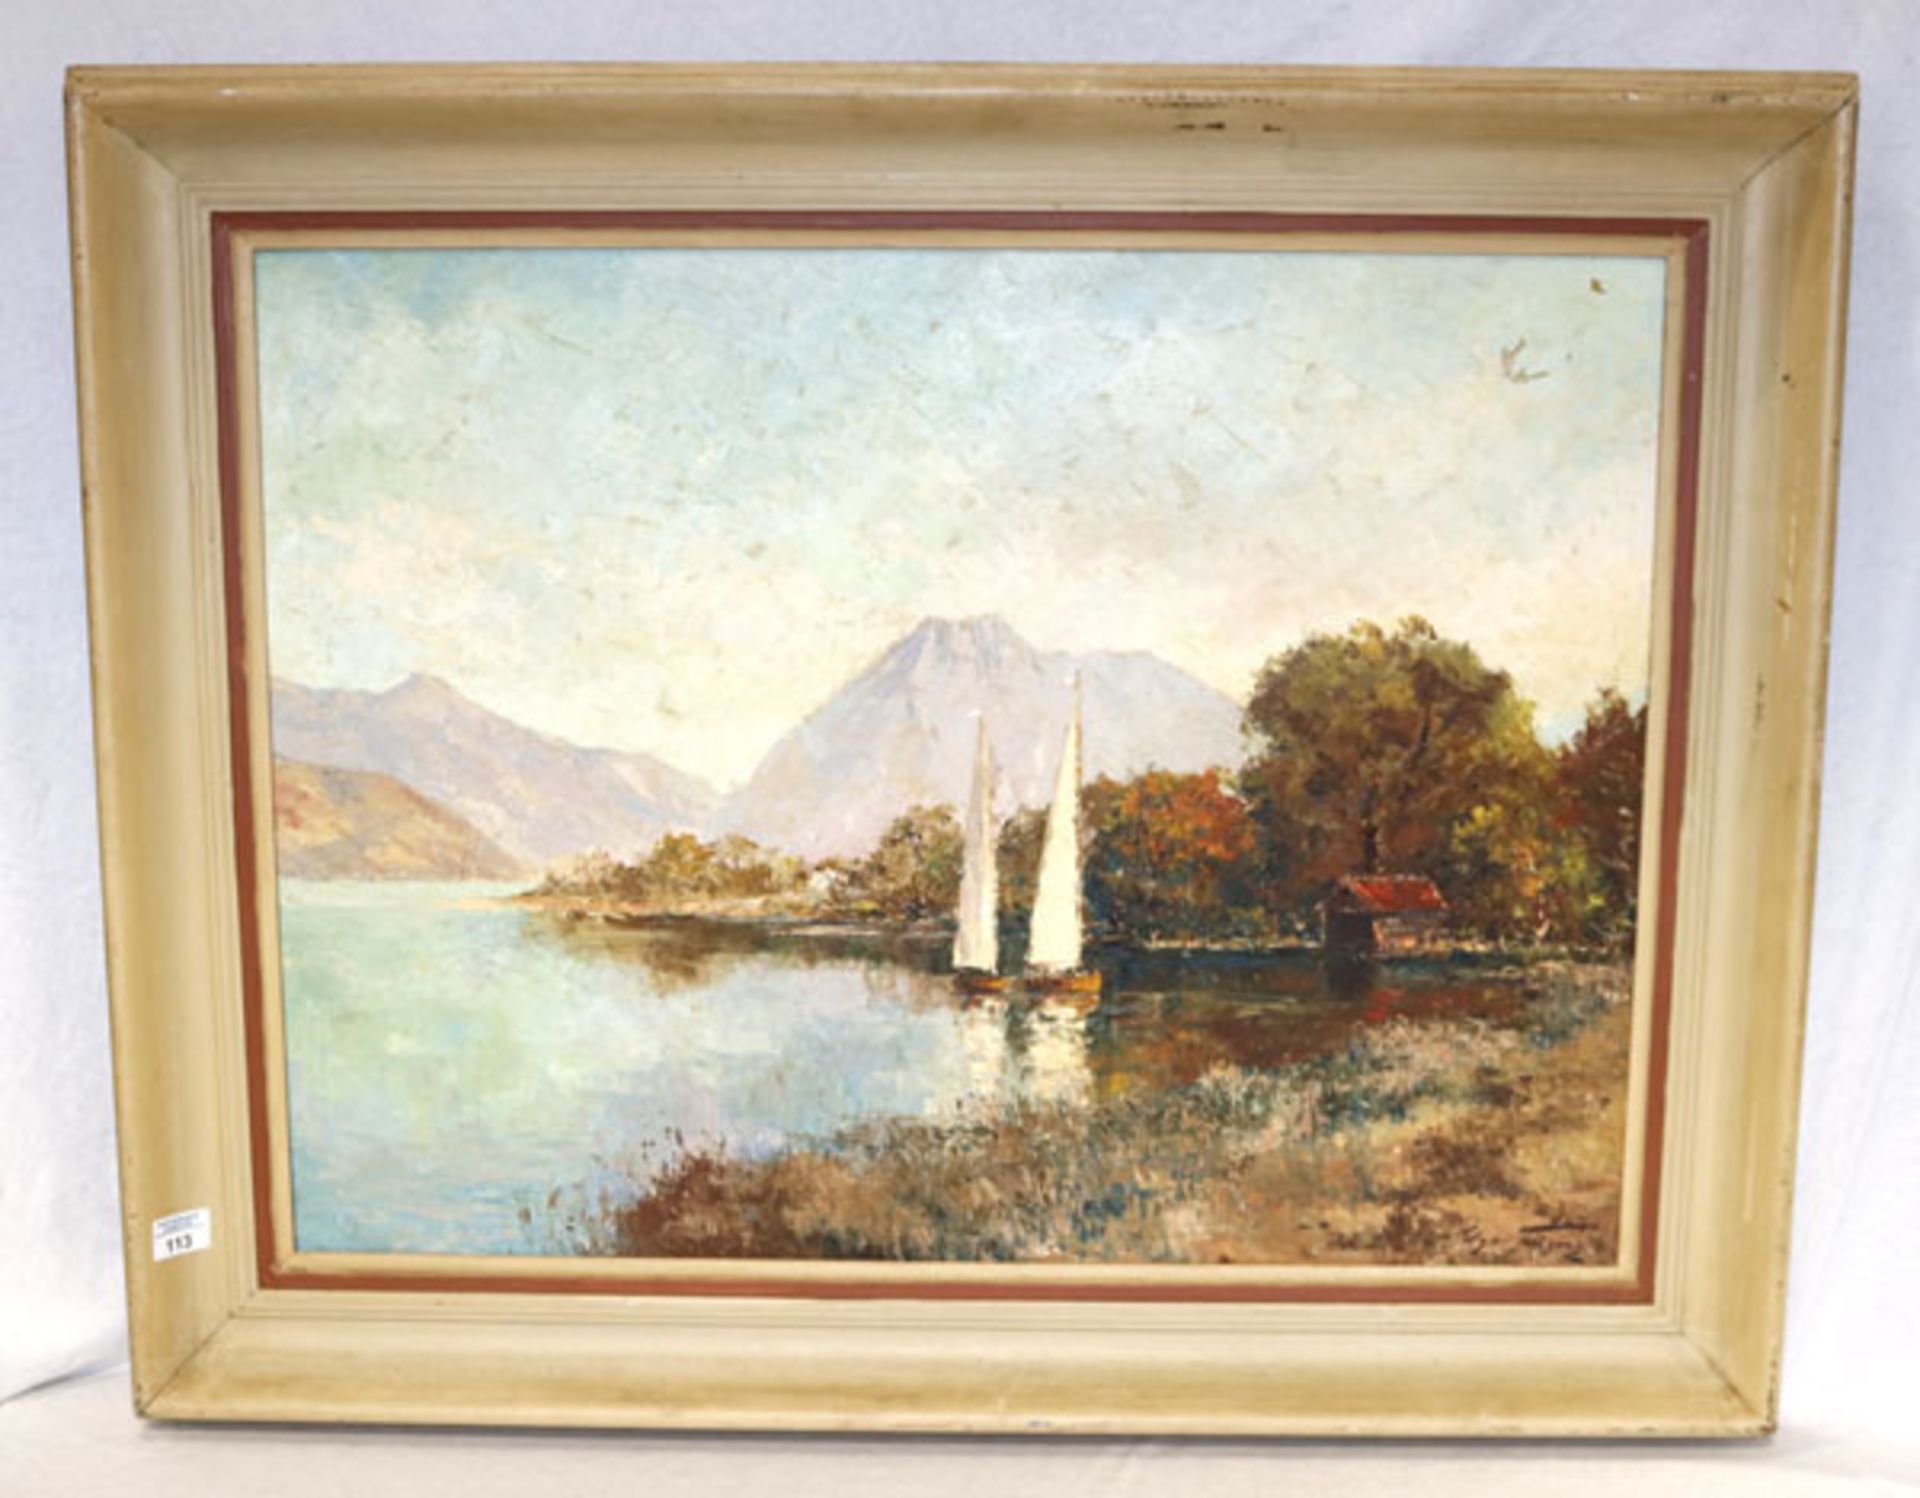 Gemälde ÖL/LW 'Gebirgssee mit Segelbooten', signiert Edgar Freyberg, * 1927 Berlin/Charlottenburg,